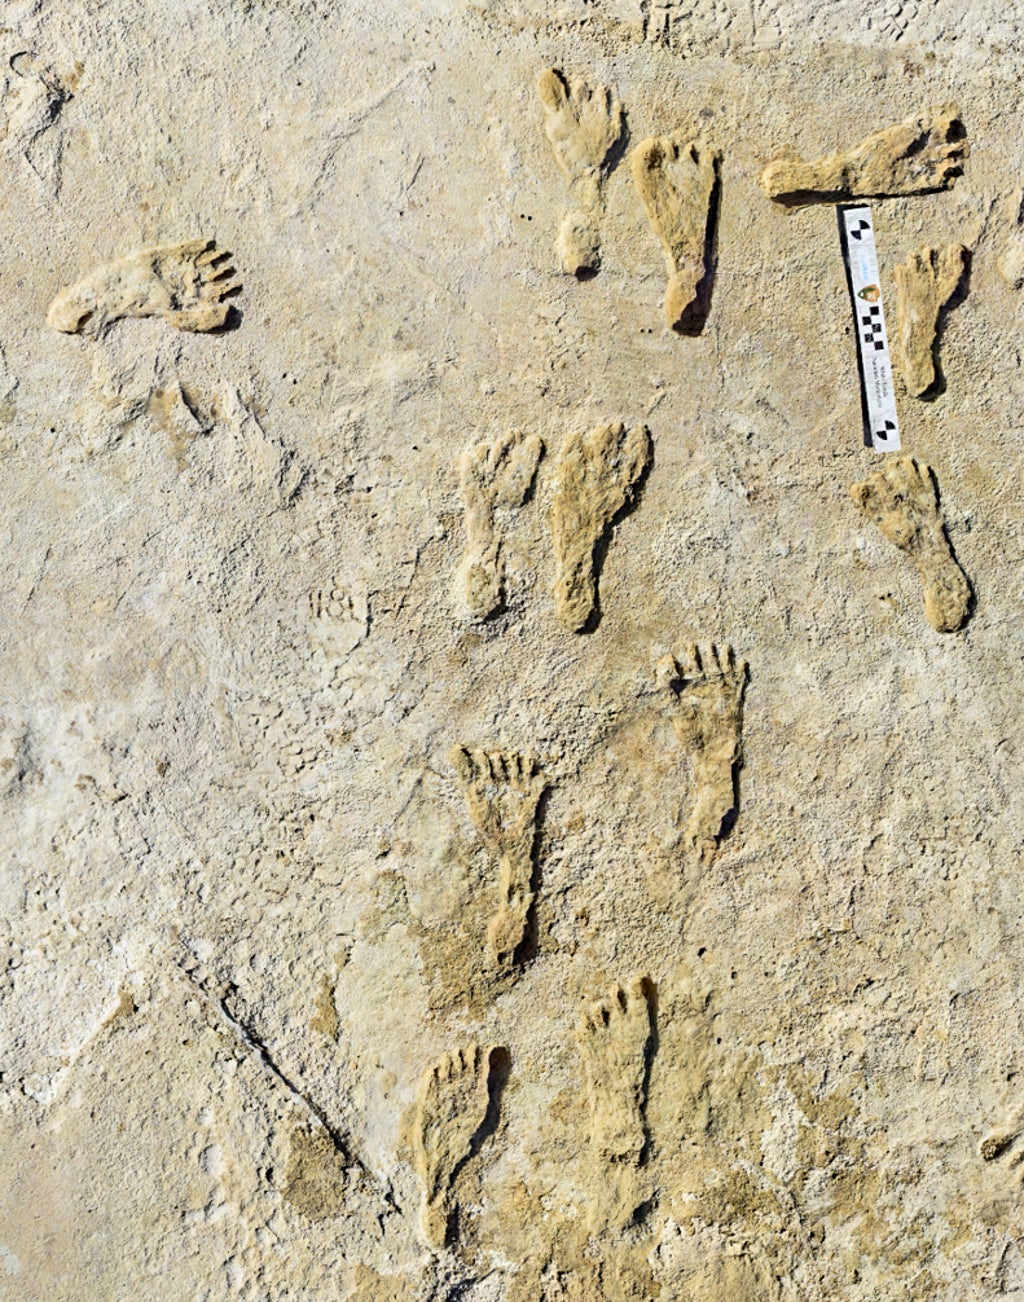 New Mexico çölünde keşfedilen yetişkin ve çocuğun eski fosilleşmiş ayak izleri